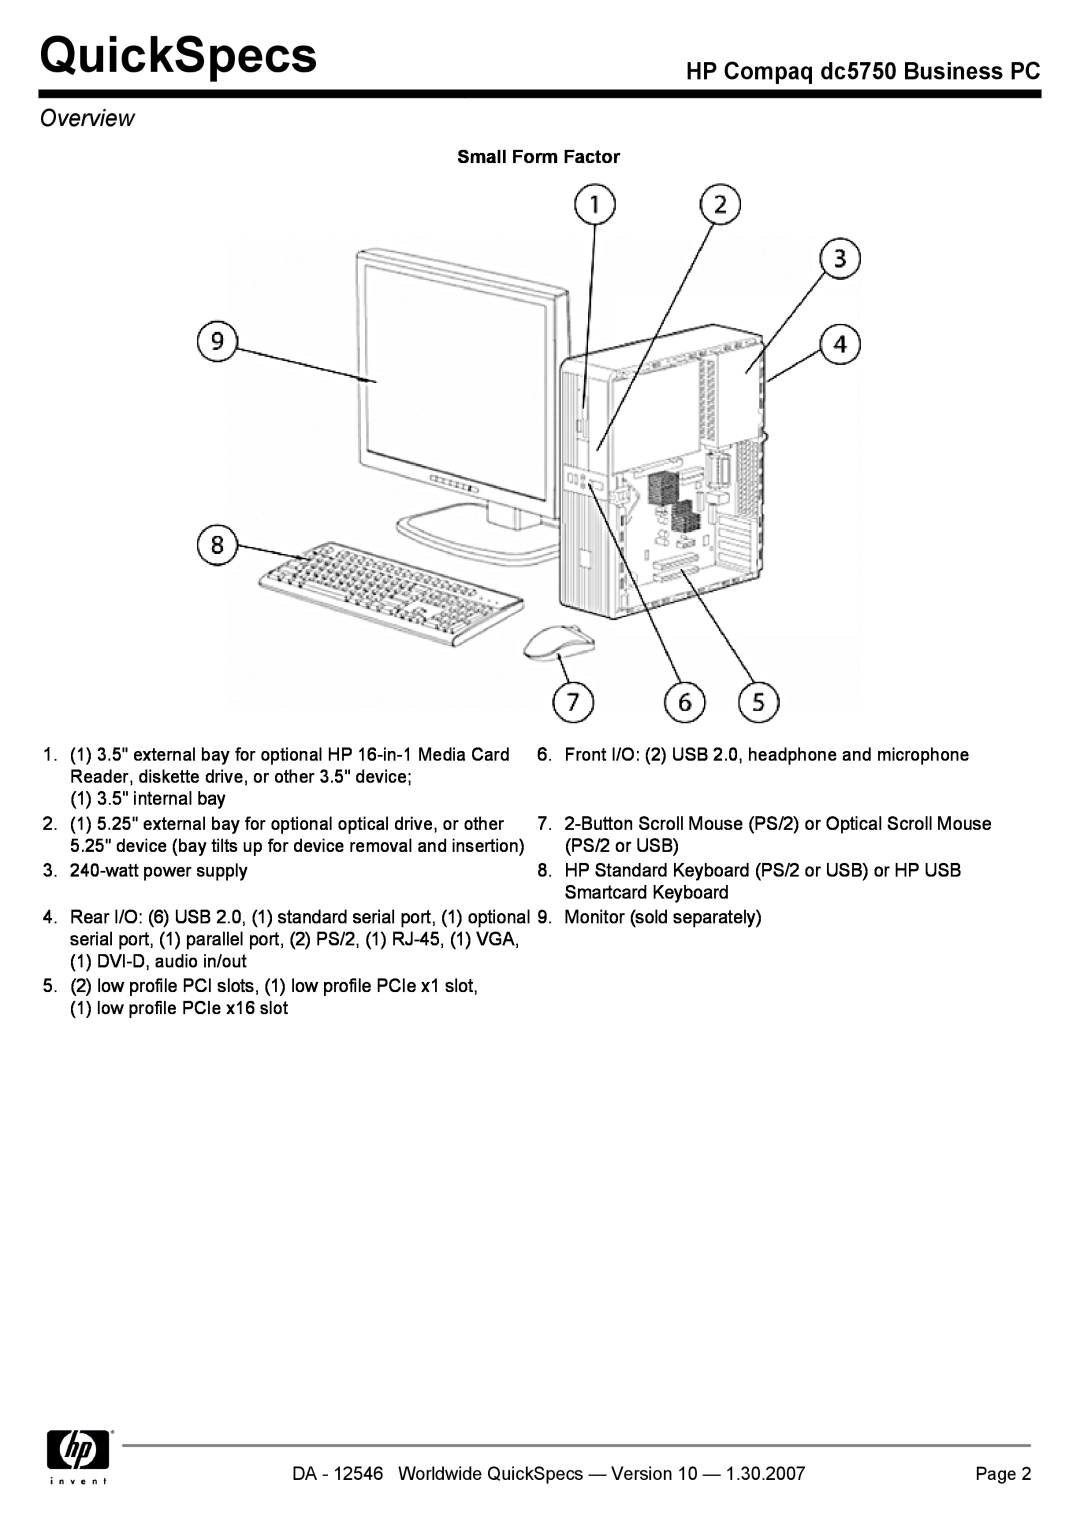 Compaq manual QuickSpecs, HP Compaq dc5750 Business PC, Overview, Small Form Factor 